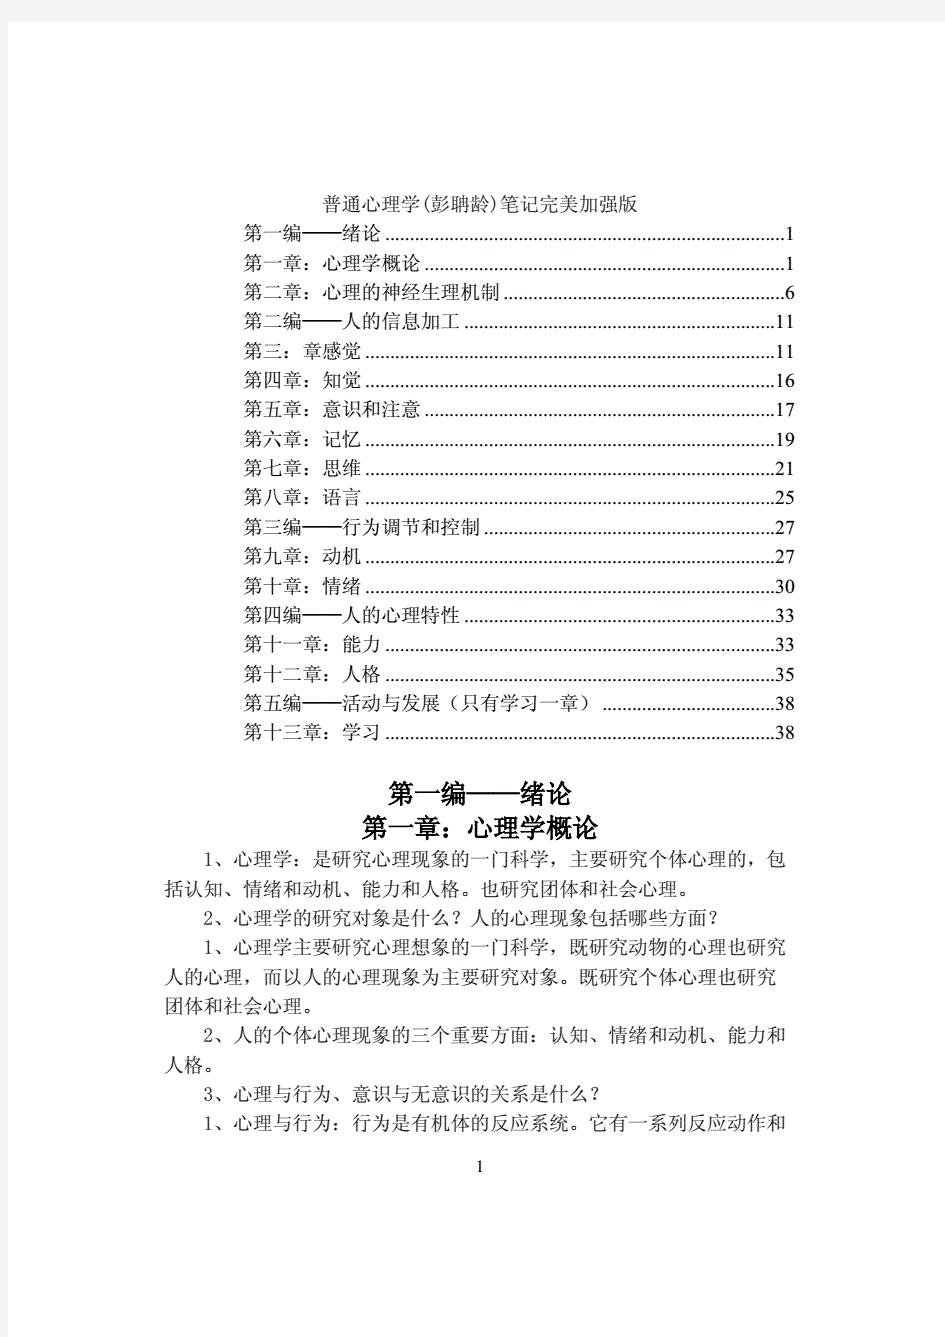 精心整理精美打印版普通心理学彭聃龄笔记完美加强版.pdf